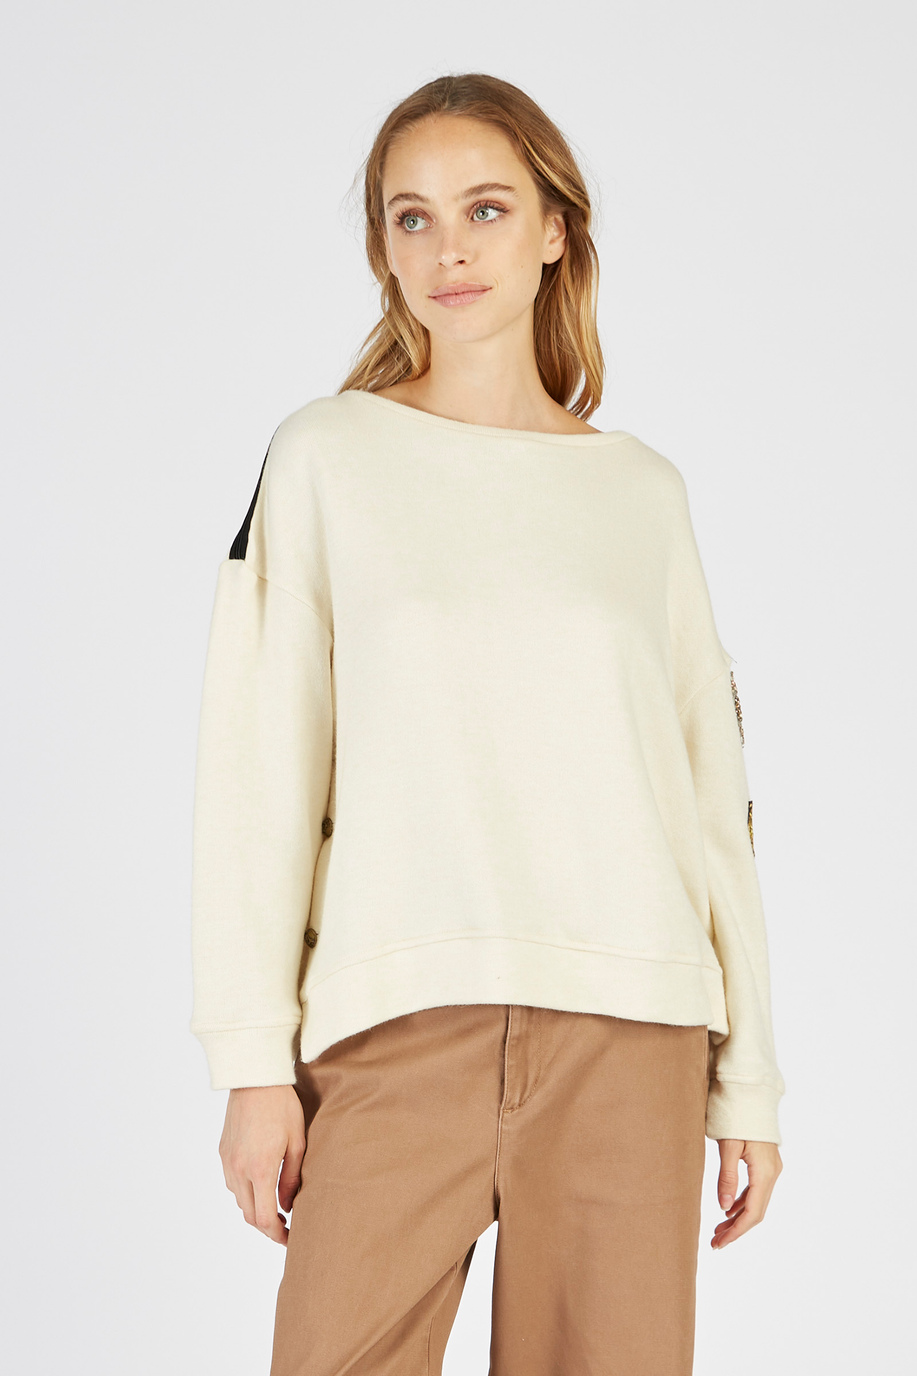 Damen-Sweatshirt mit hohem Kragen und langen Ärmeln - Unsere Favoriten für sie | La Martina - Official Online Shop